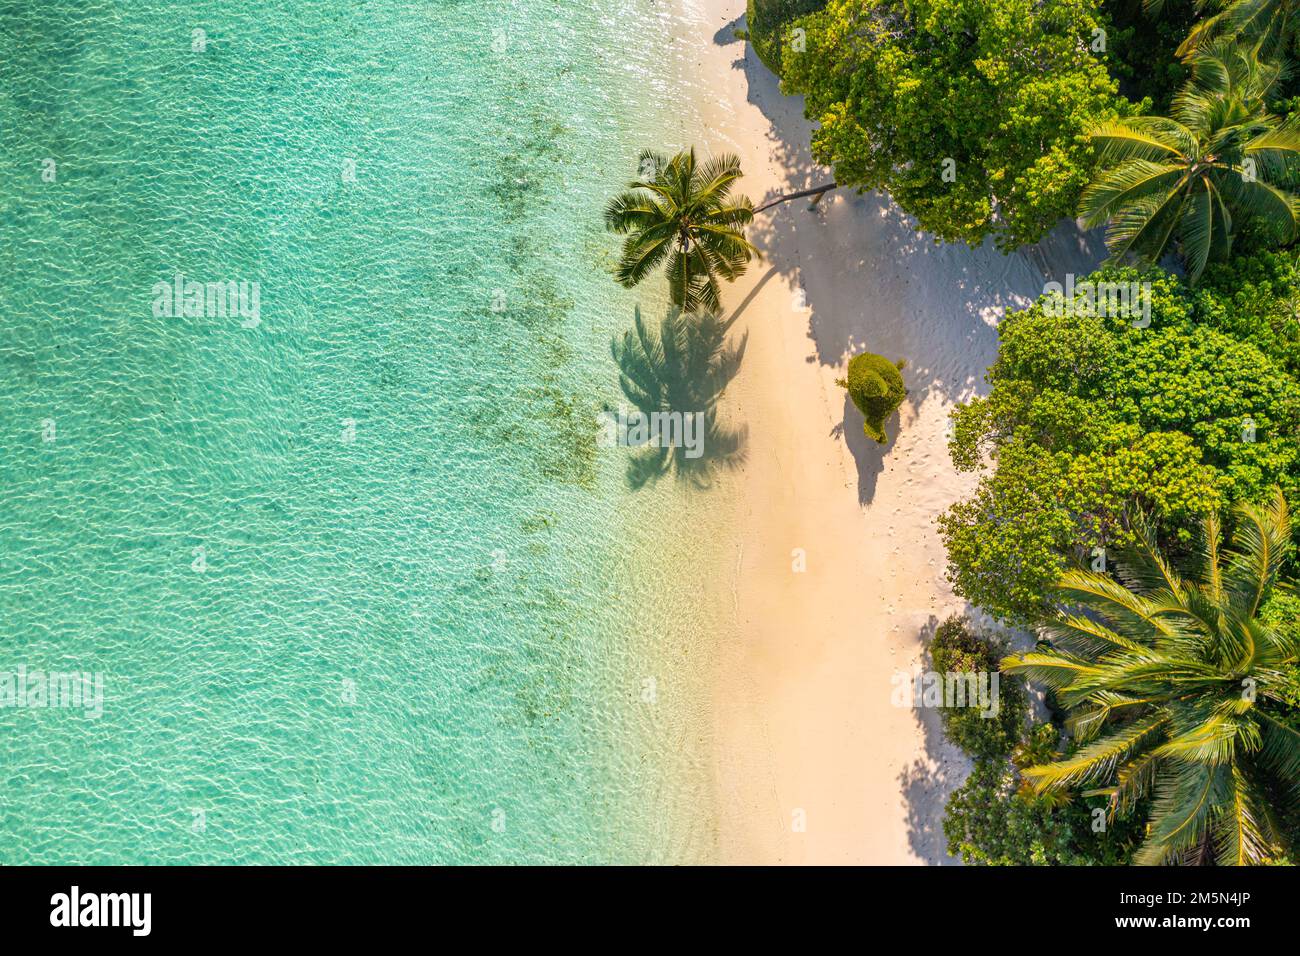 Vista panoramica aerea delle palme tropicali estive, ombre sulla costa sabbiosa, onde oceaniche che si infrangono. Splendida vista dall'alto, soleggiata costa del mare, esotica, incredibile Foto Stock